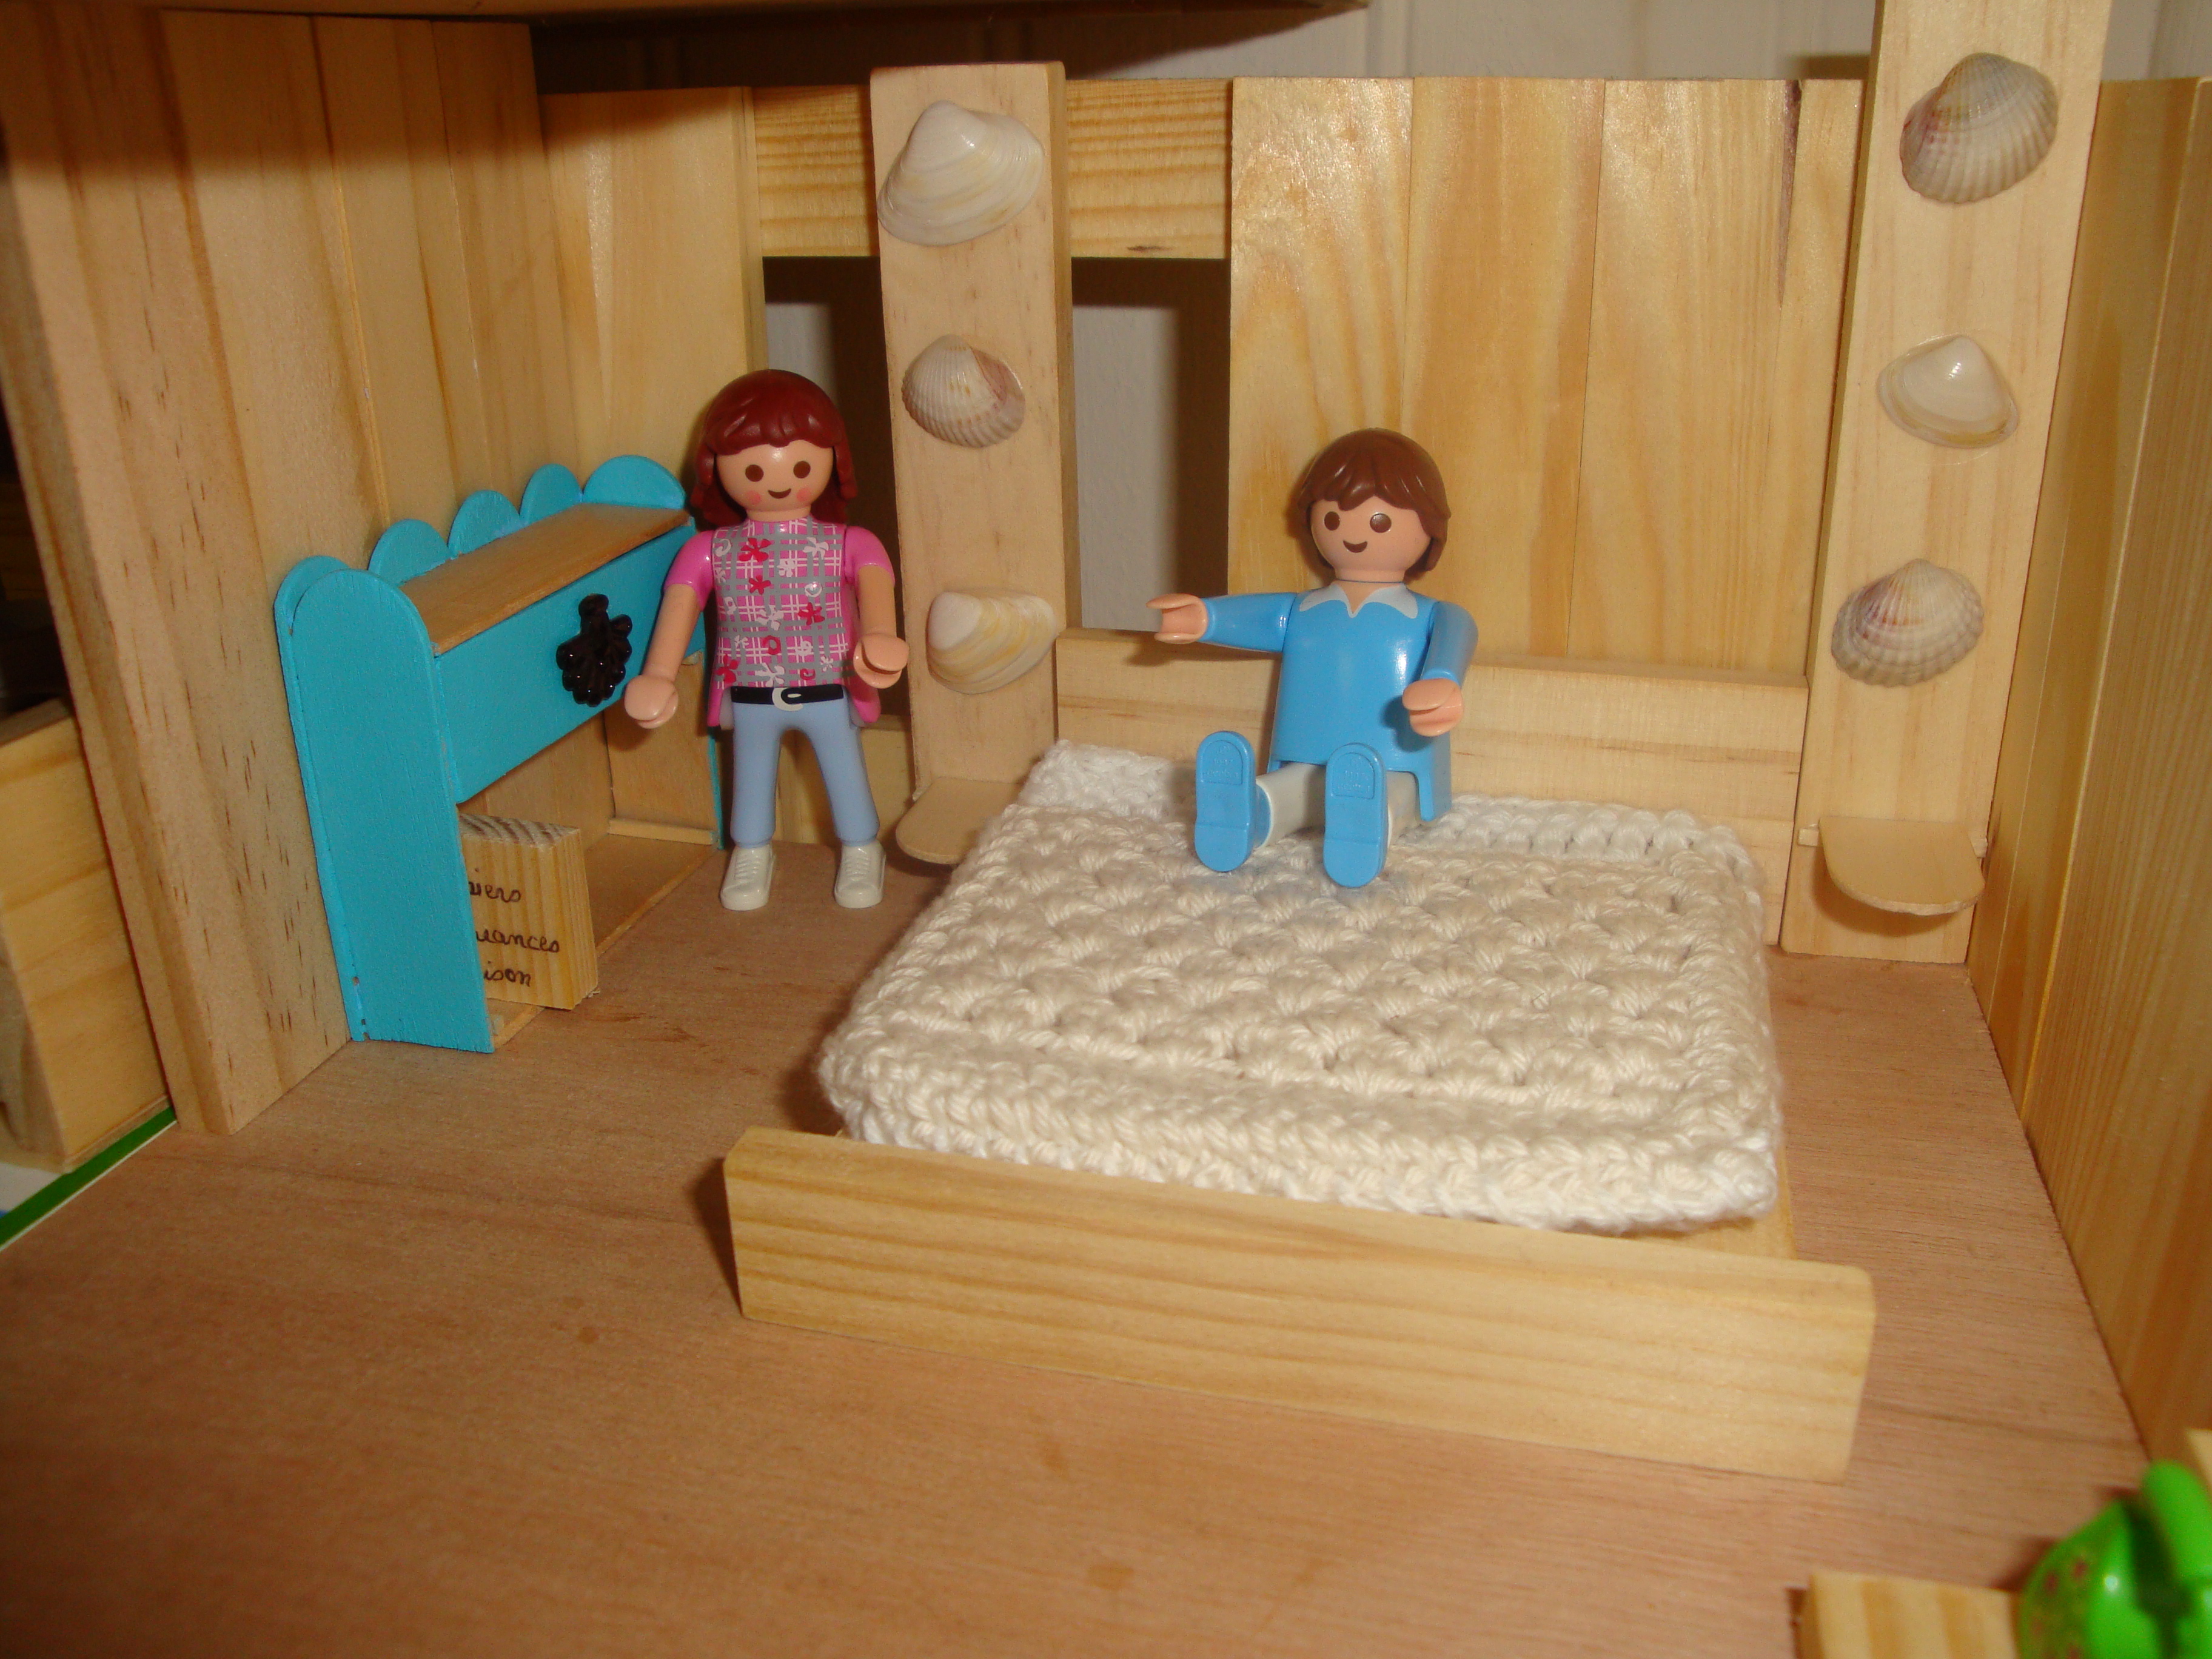 Chambre des parents playmobil - Playmobil